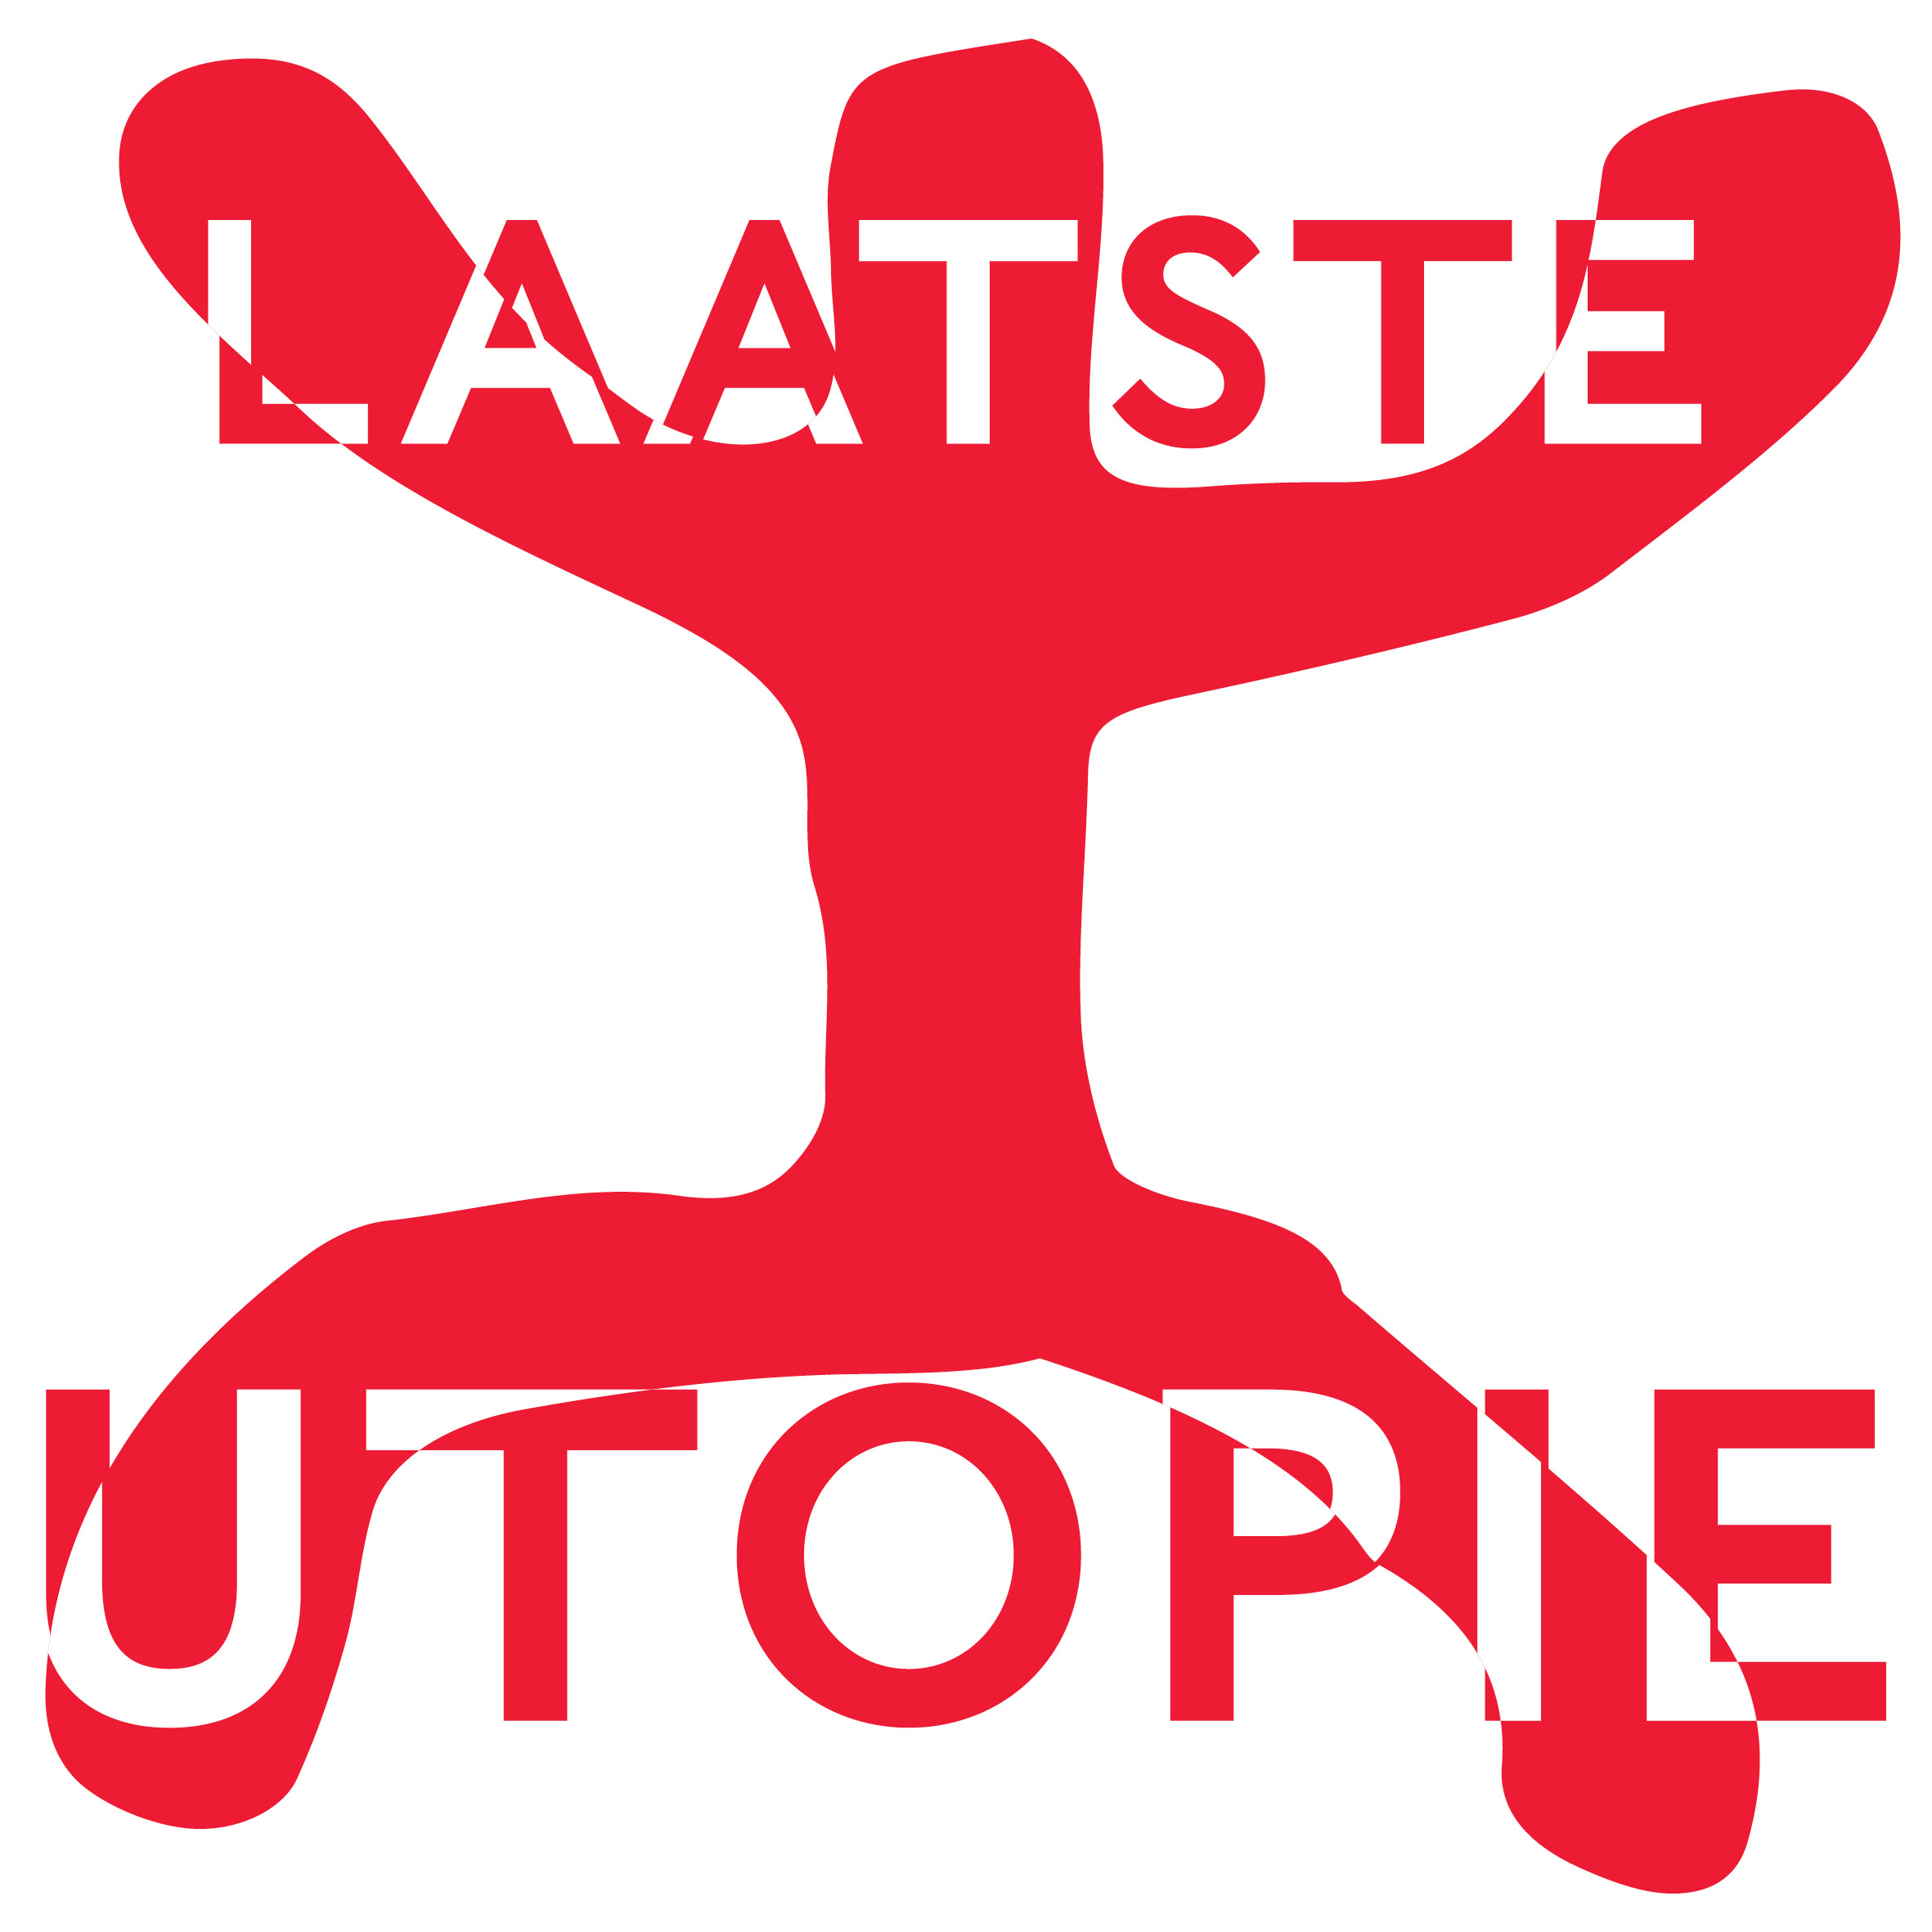 Show artwork for Laatste utopie